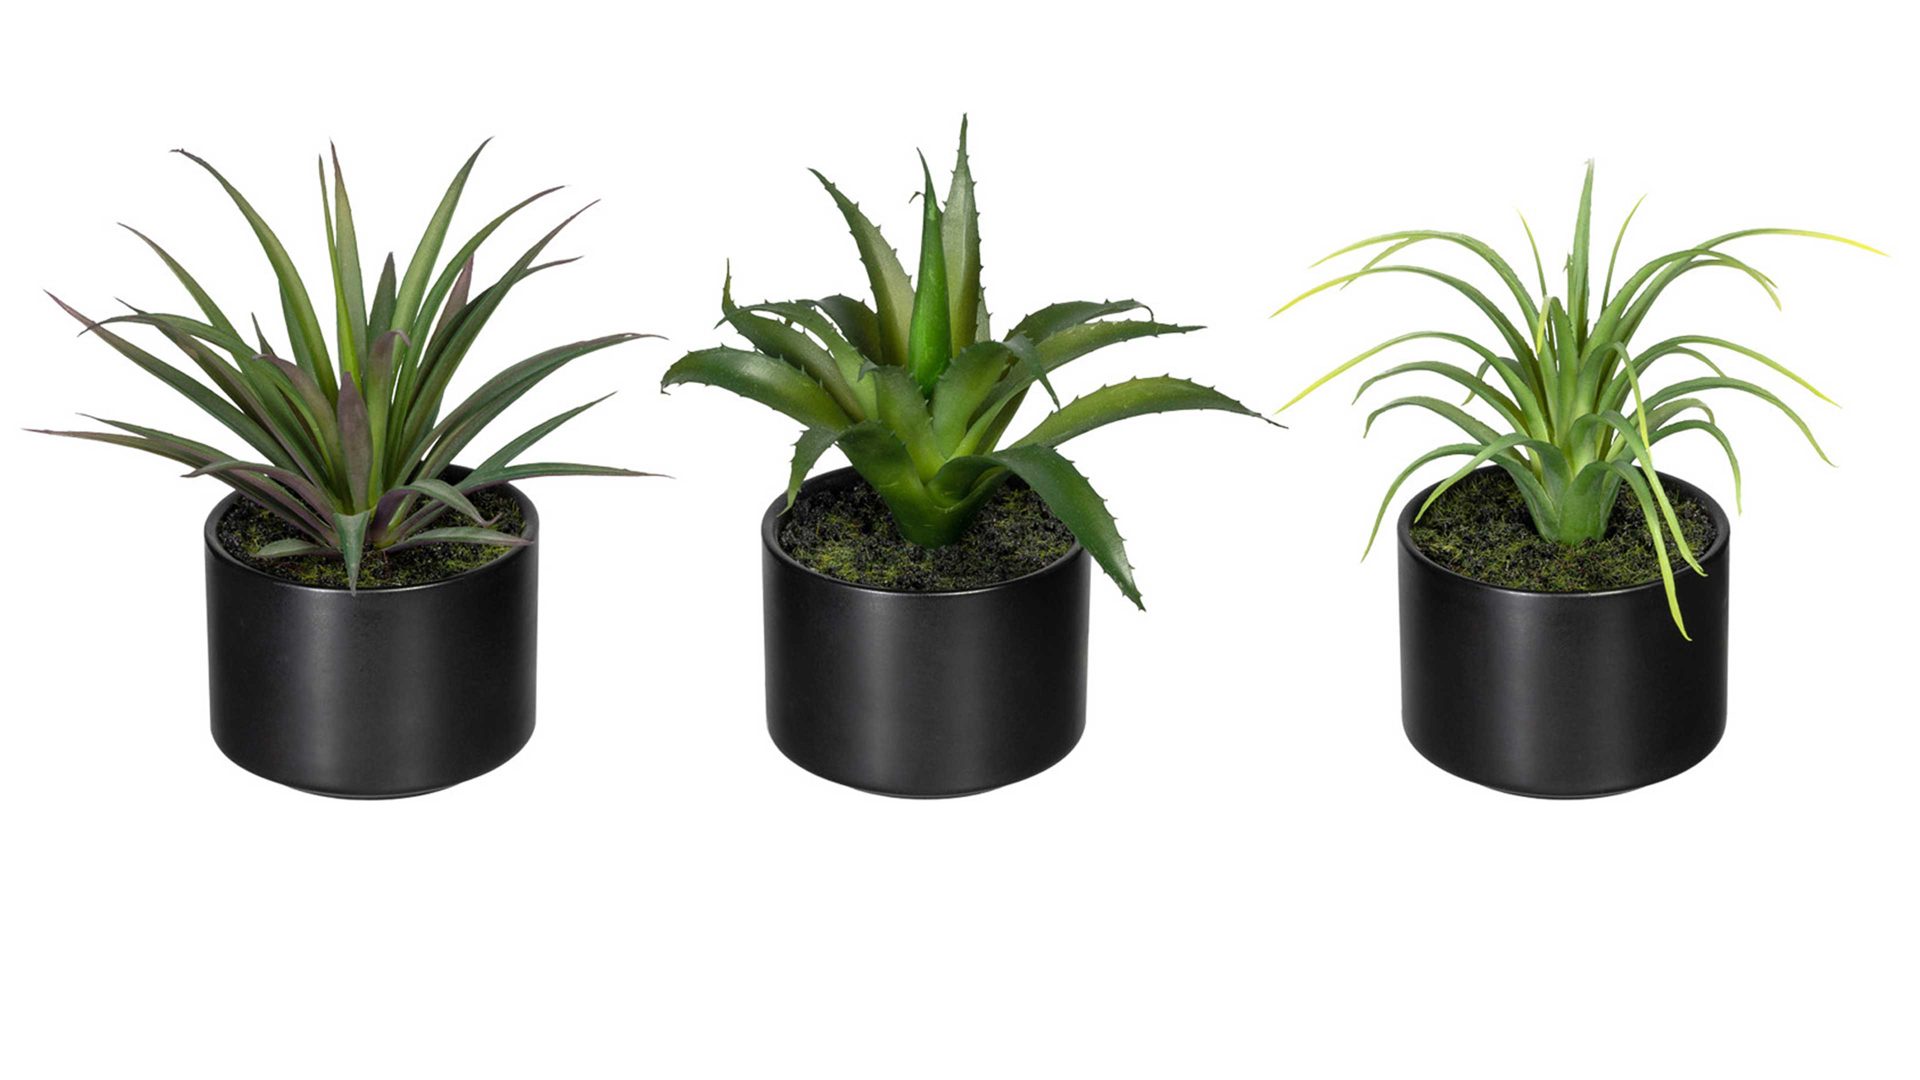 Pflanze Gasper aus Kunststoff in Grün Grünpflanzen-Set grüner Kunststoff & schwarze Keramik – dreiteilig